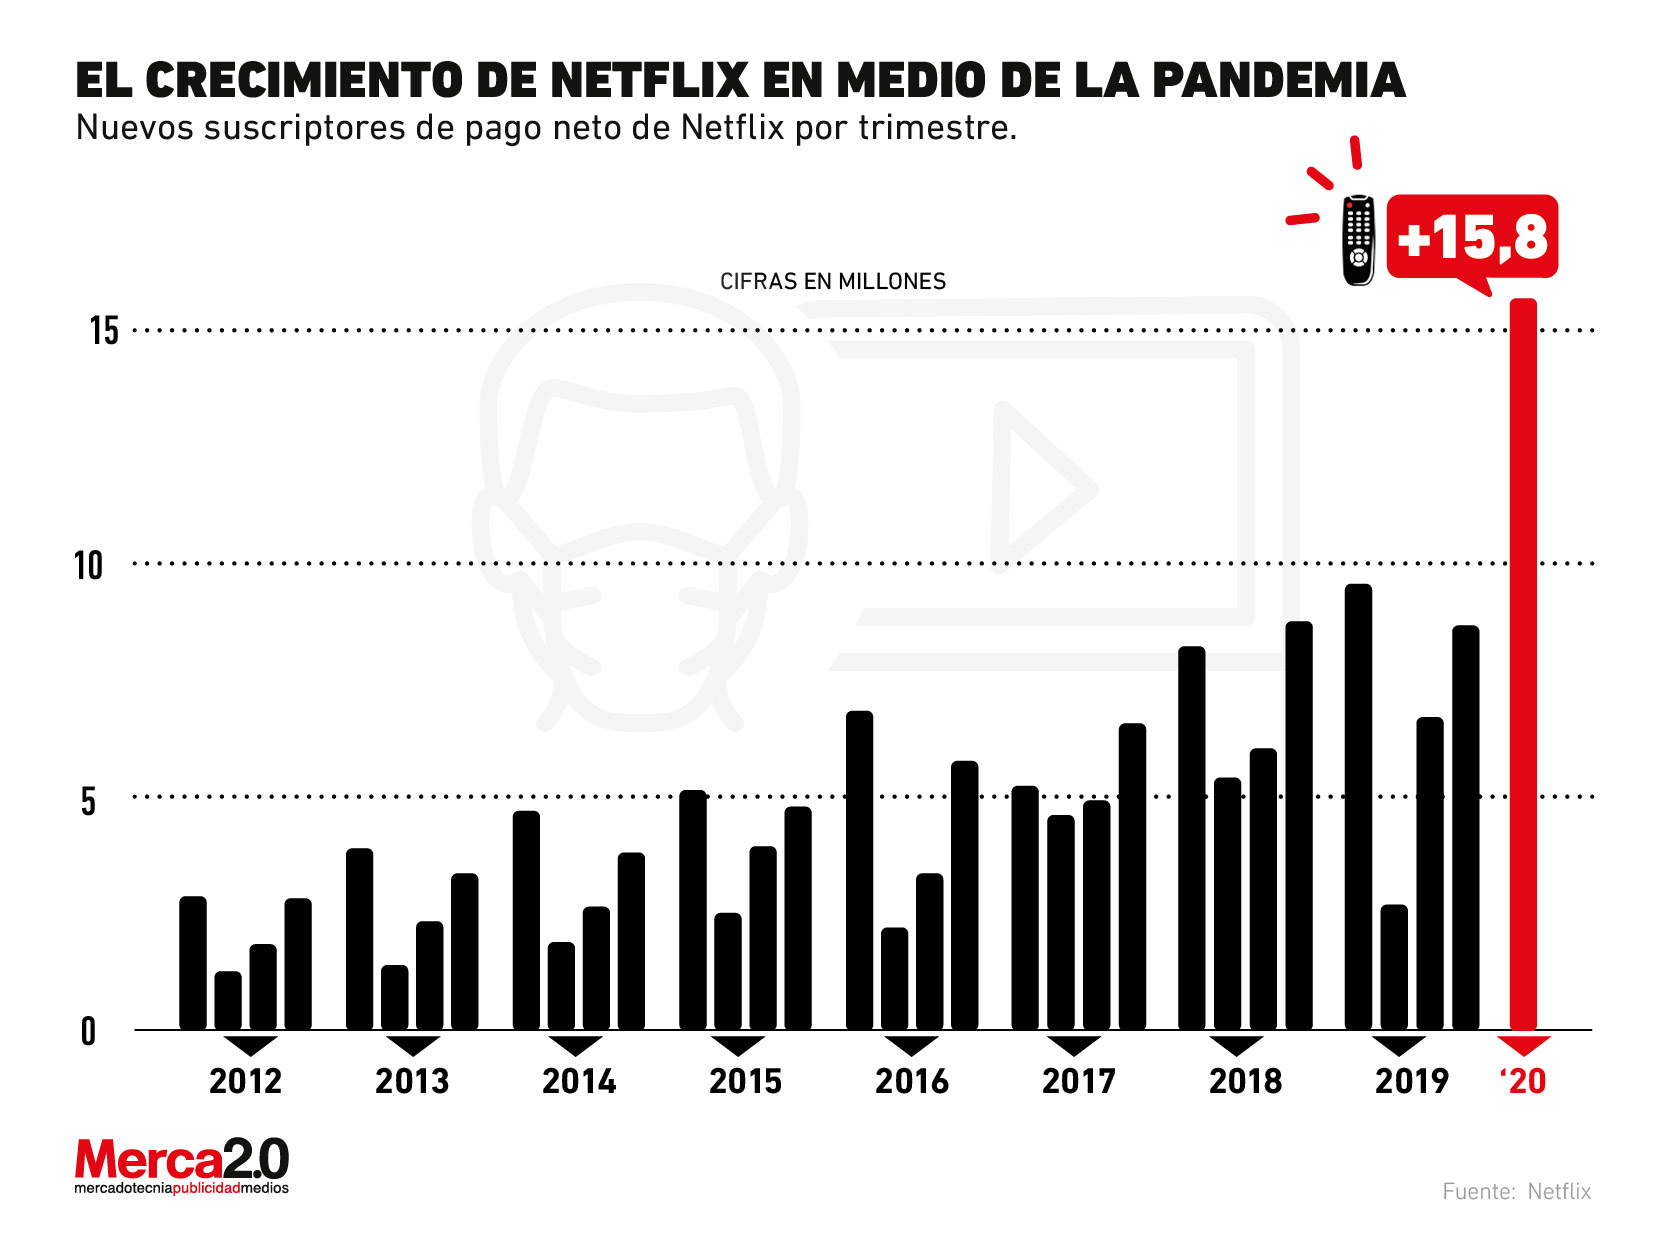 Así luce el imparable crecimiento de Netflix